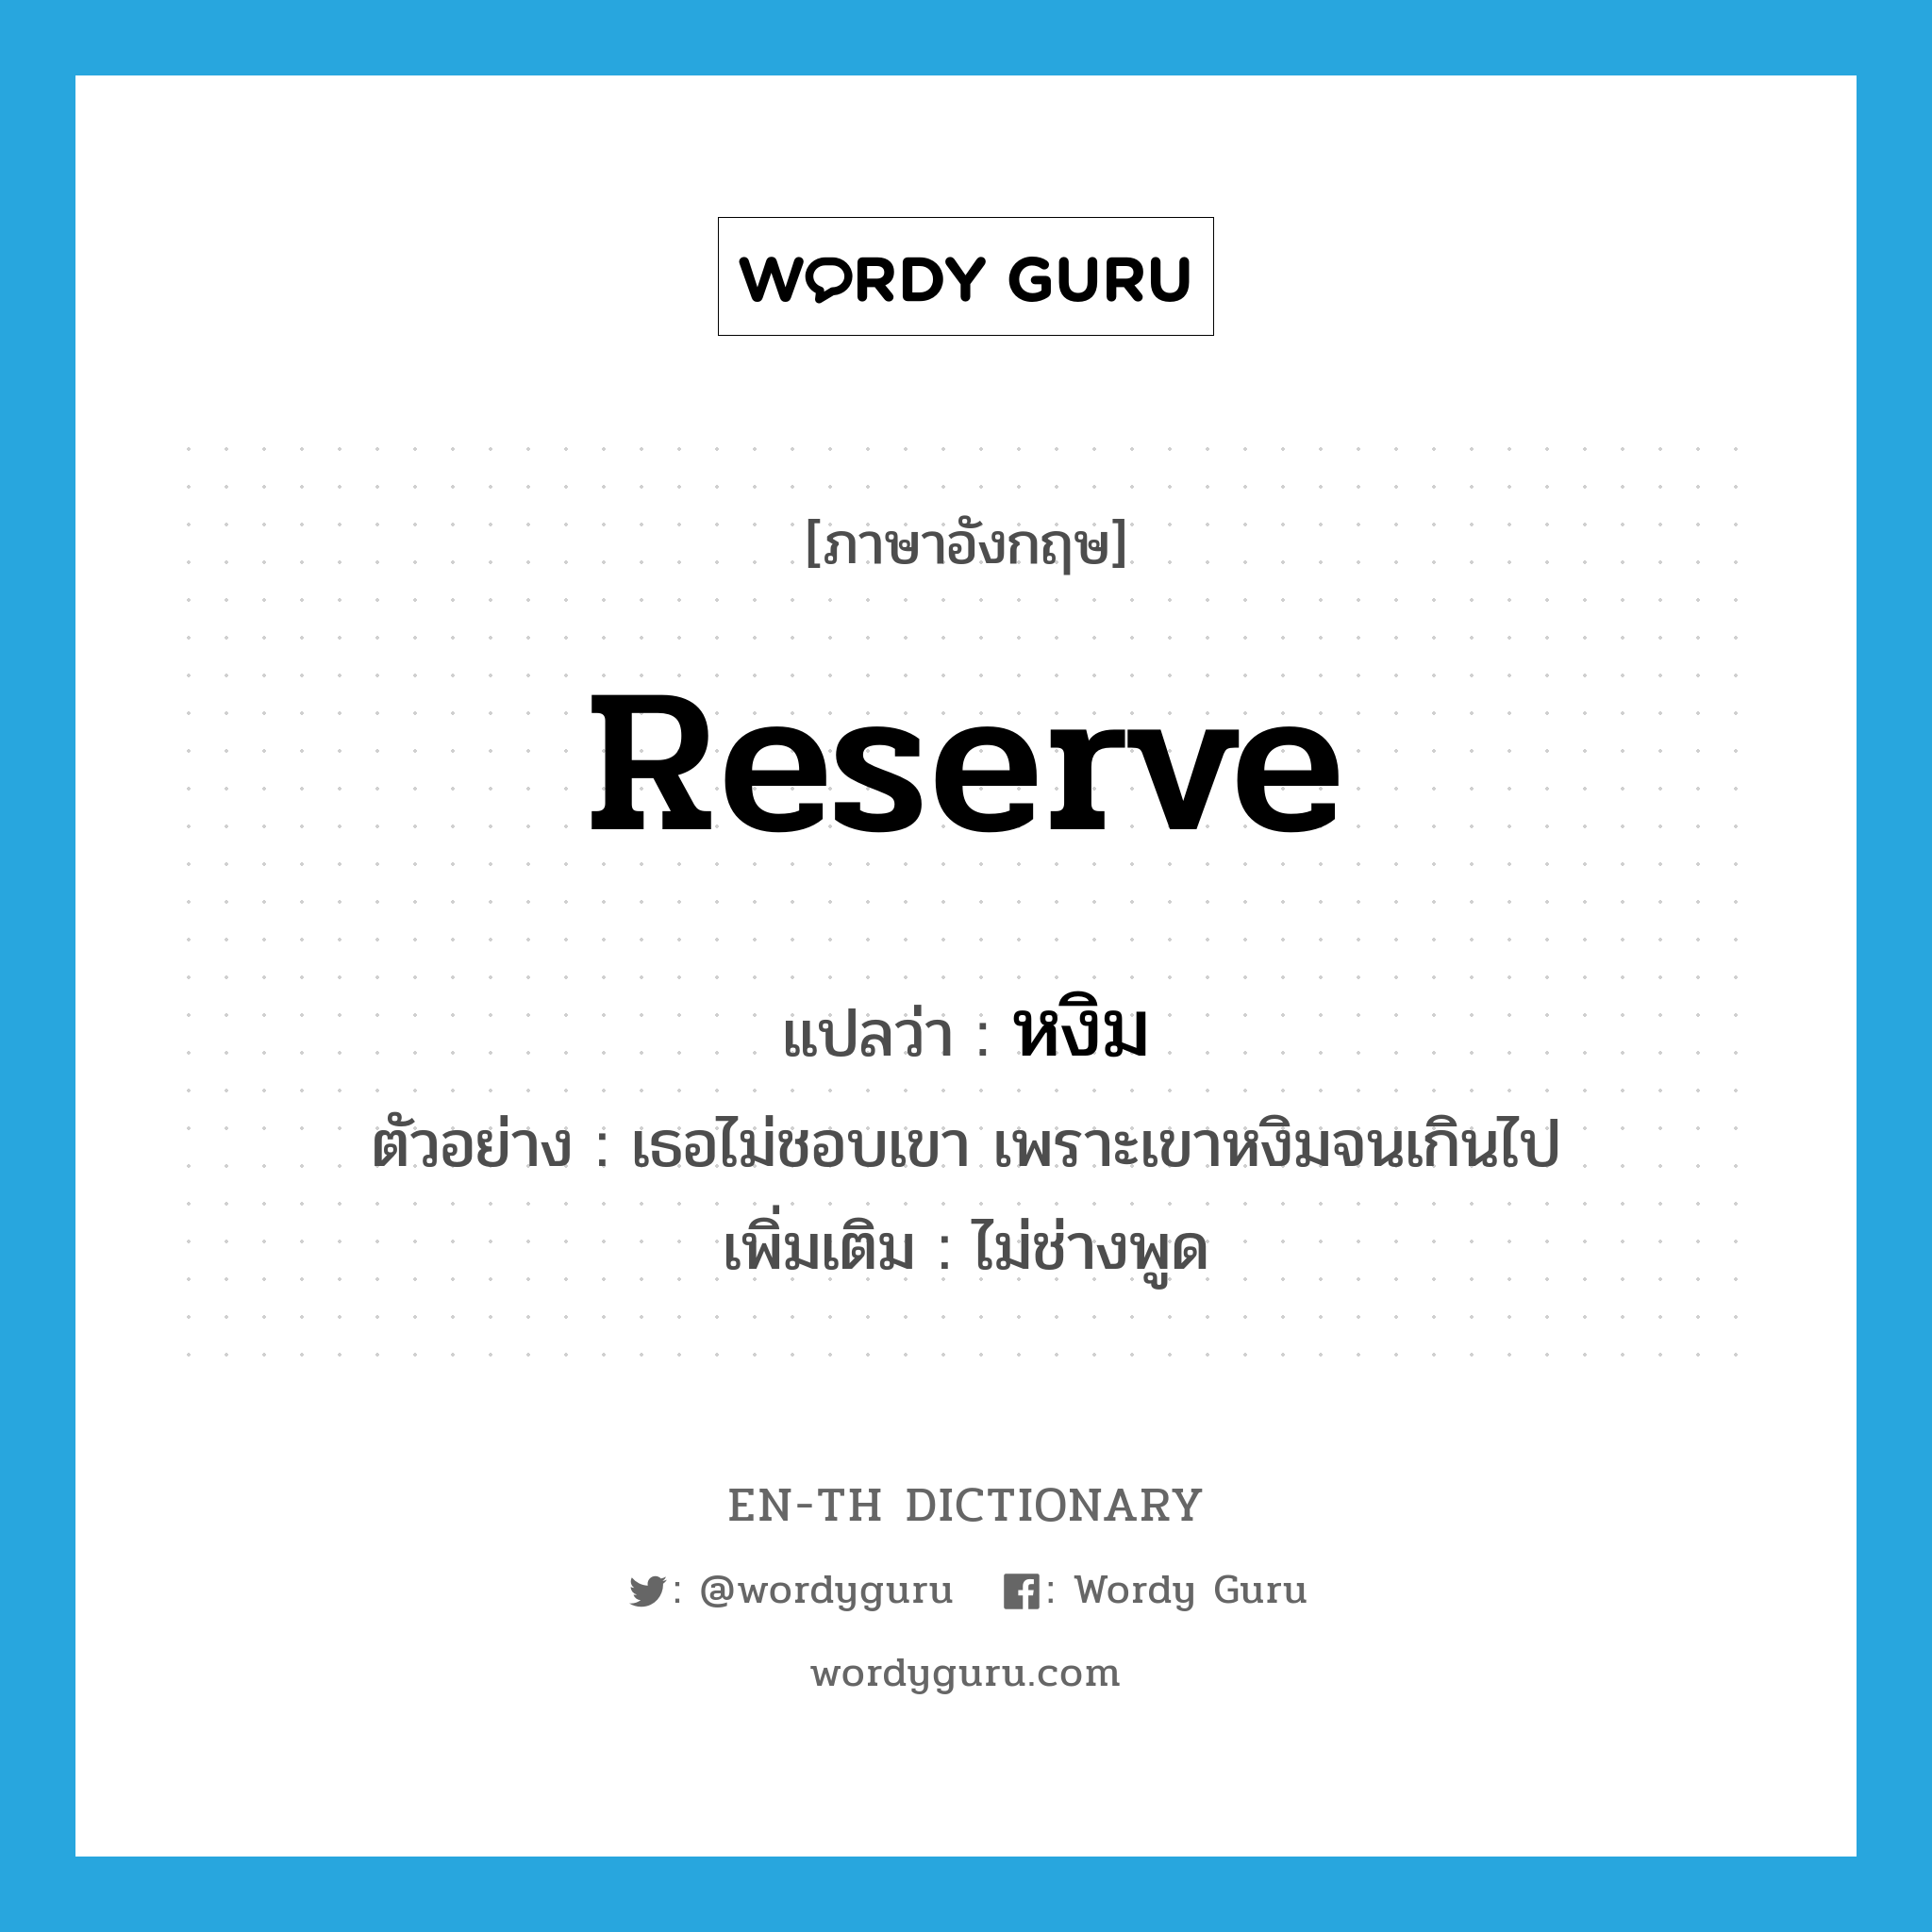 reserve แปลว่า?, คำศัพท์ภาษาอังกฤษ reserve แปลว่า หงิม ประเภท V ตัวอย่าง เธอไม่ชอบเขา เพราะเขาหงิมจนเกินไป เพิ่มเติม ไม่ช่างพูด หมวด V